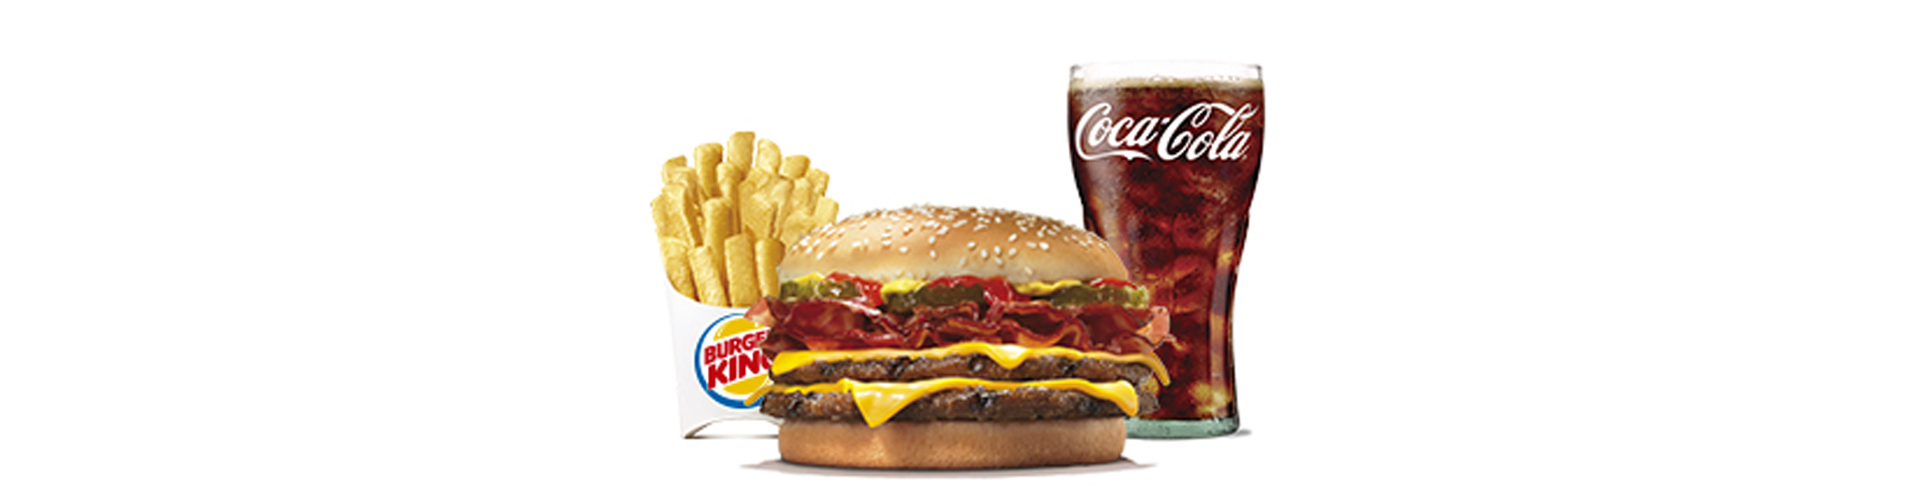 menu-doble-cheese-bacon-burgerking-40001718-cocacola-zero-aros